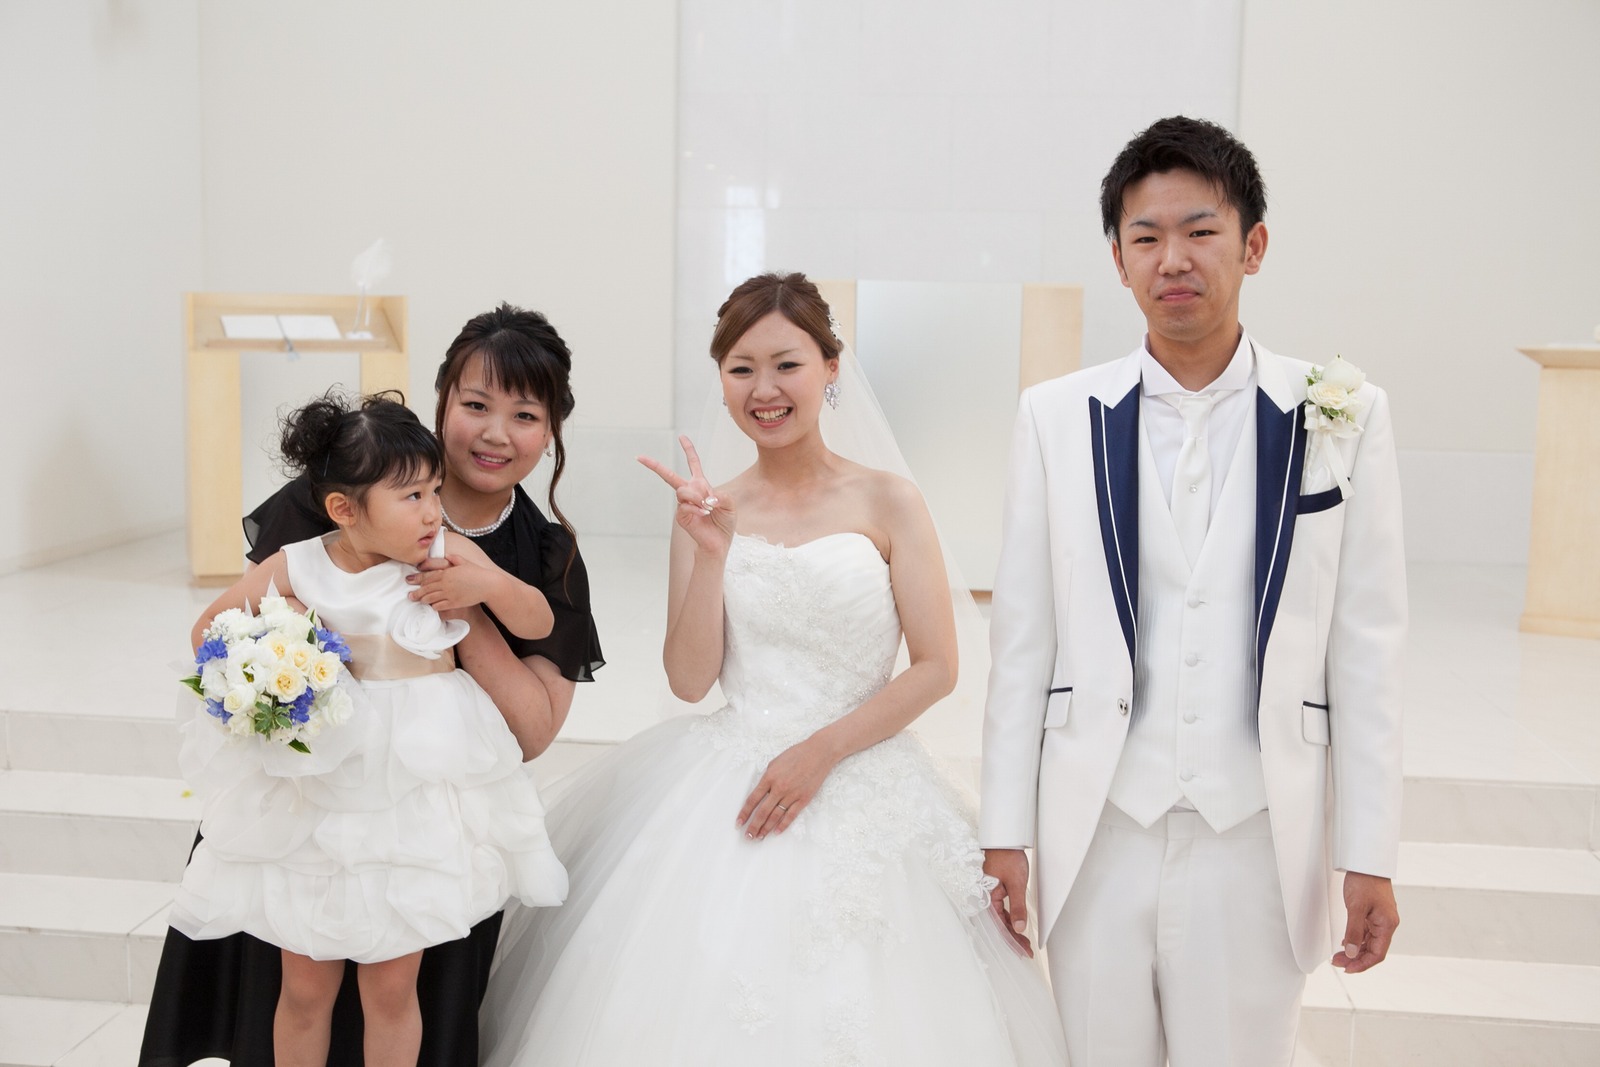 徳島市の結婚式場ブランアンジュでチャペル内での記念写真